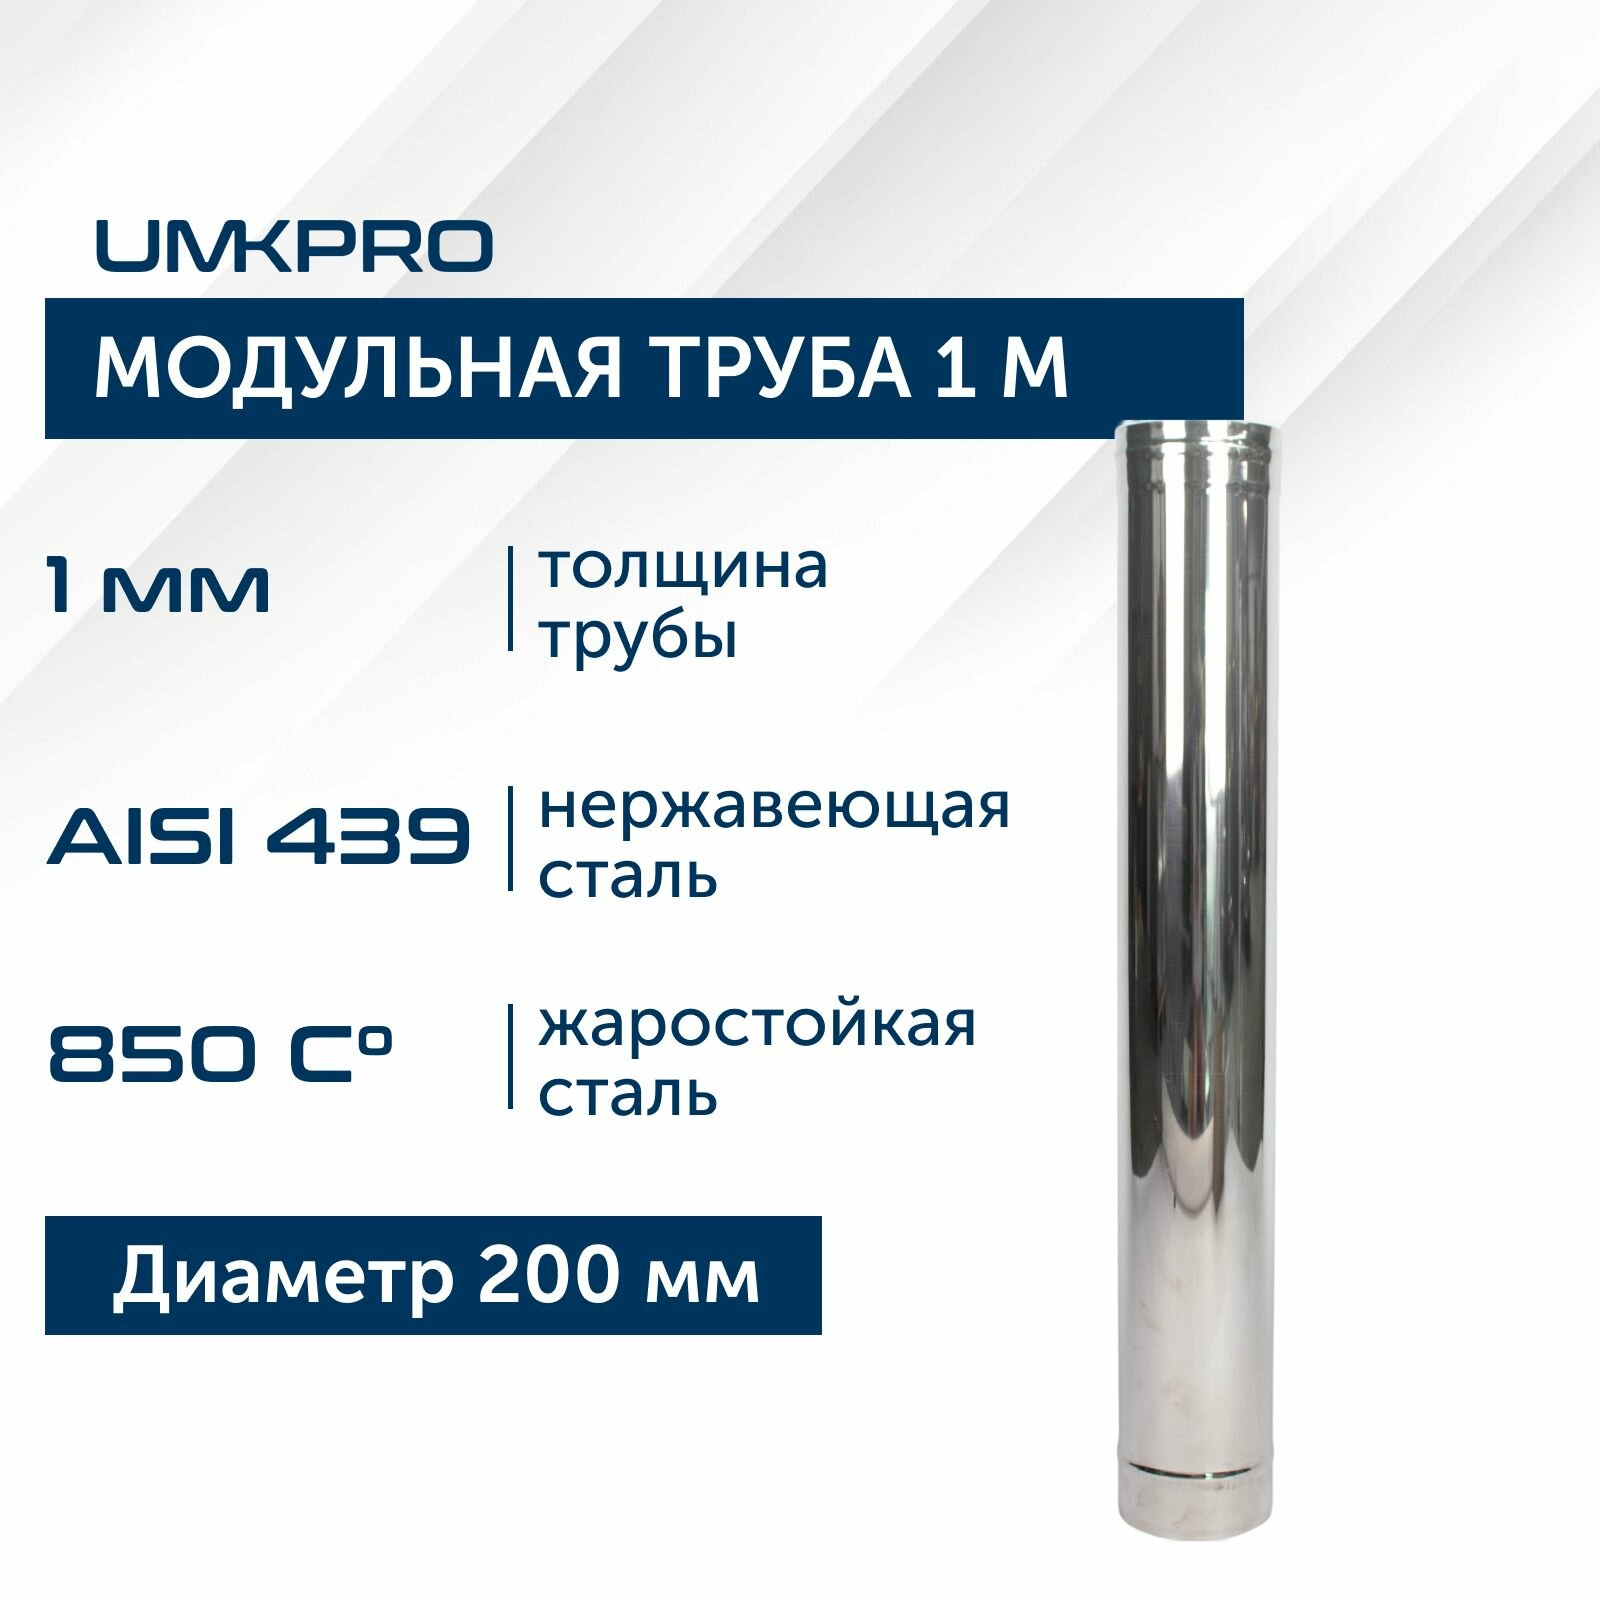 Труба модульная для дымохода 1 м UMKPRO D 200, AISI 439/1,0мм